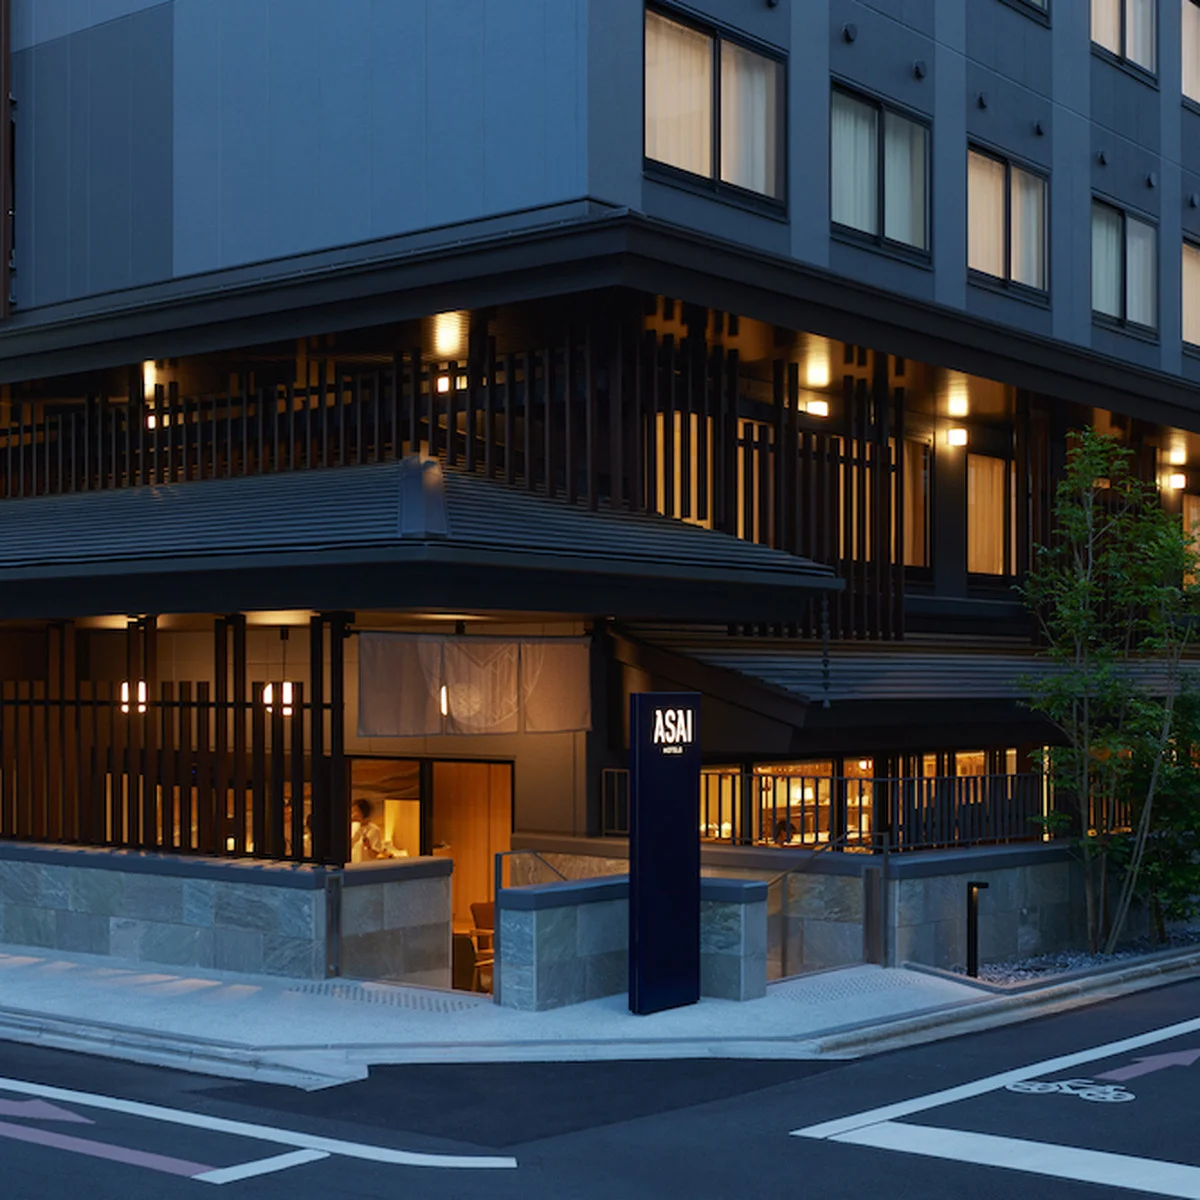 京都にタイ発のライフスタイルホテル【ASAI京都四条】がオープン。タイのストリートフードも堪能